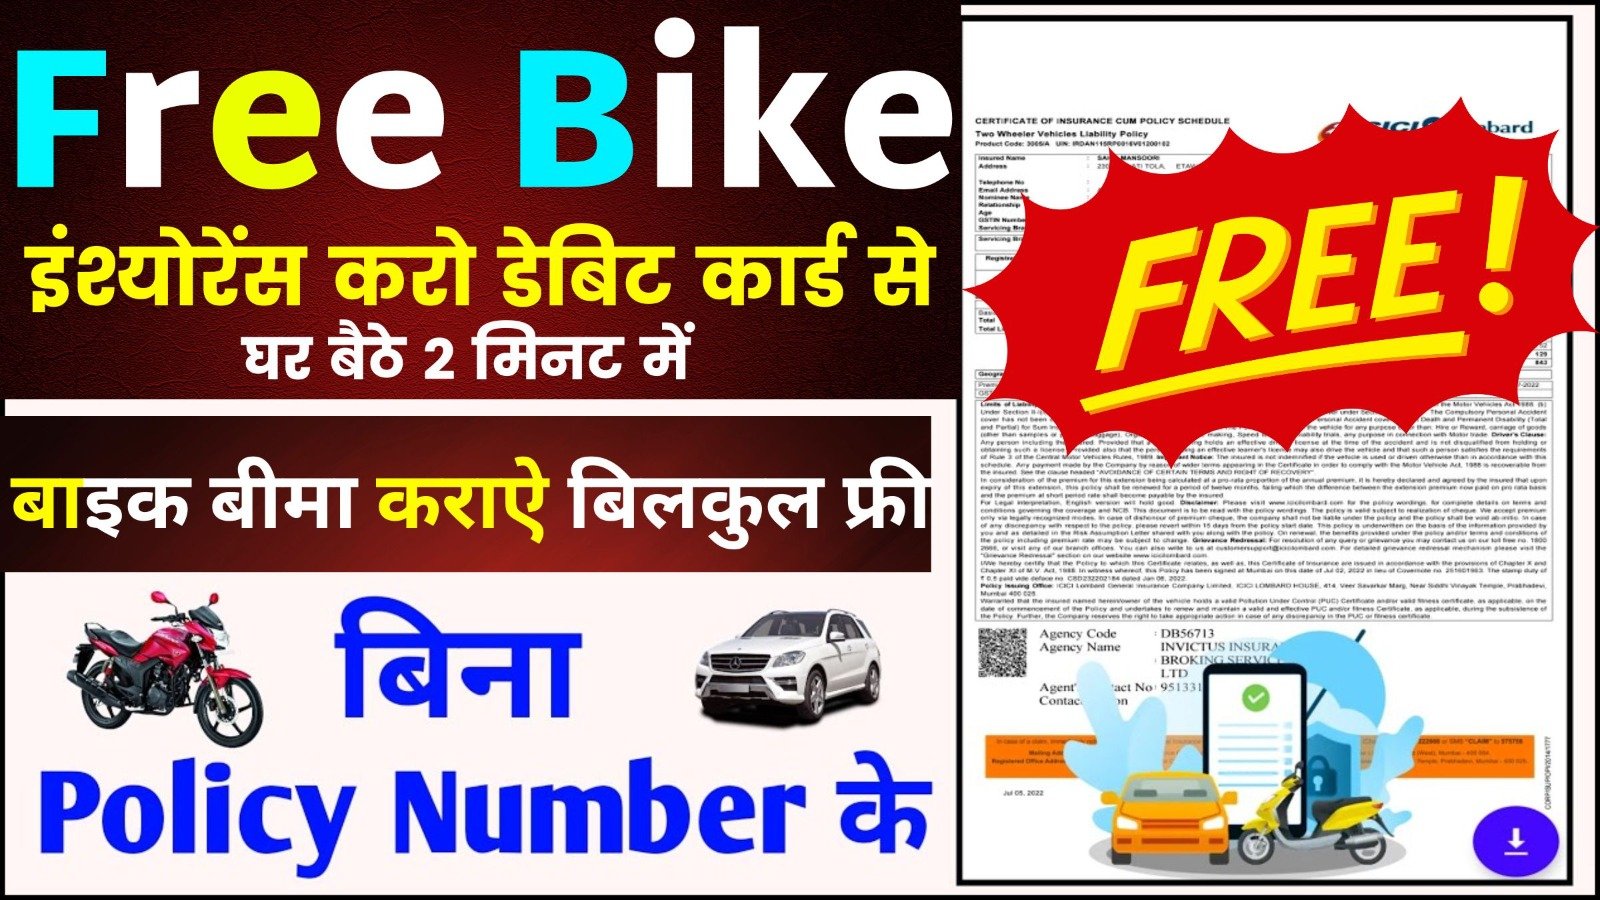 Free Bike Insurance with Debit Card